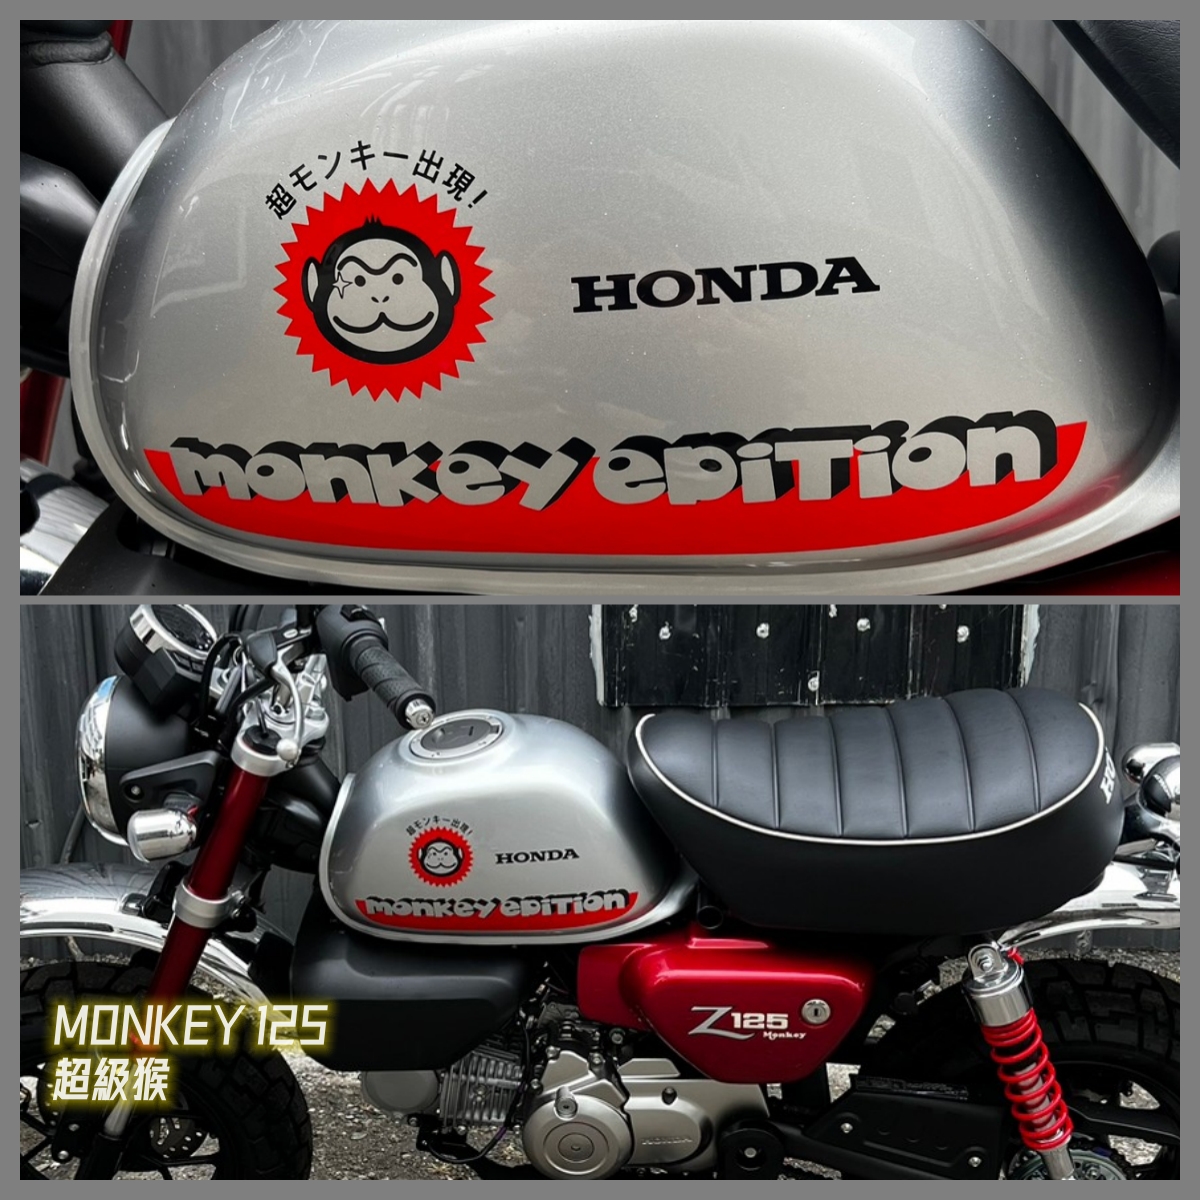 【飛翔國際】HONDA Monkey 125 - 「Webike-摩托車市」 【出售車輛】新車 MONKEY 125 特仕版 超級猴 猴子 帥!!